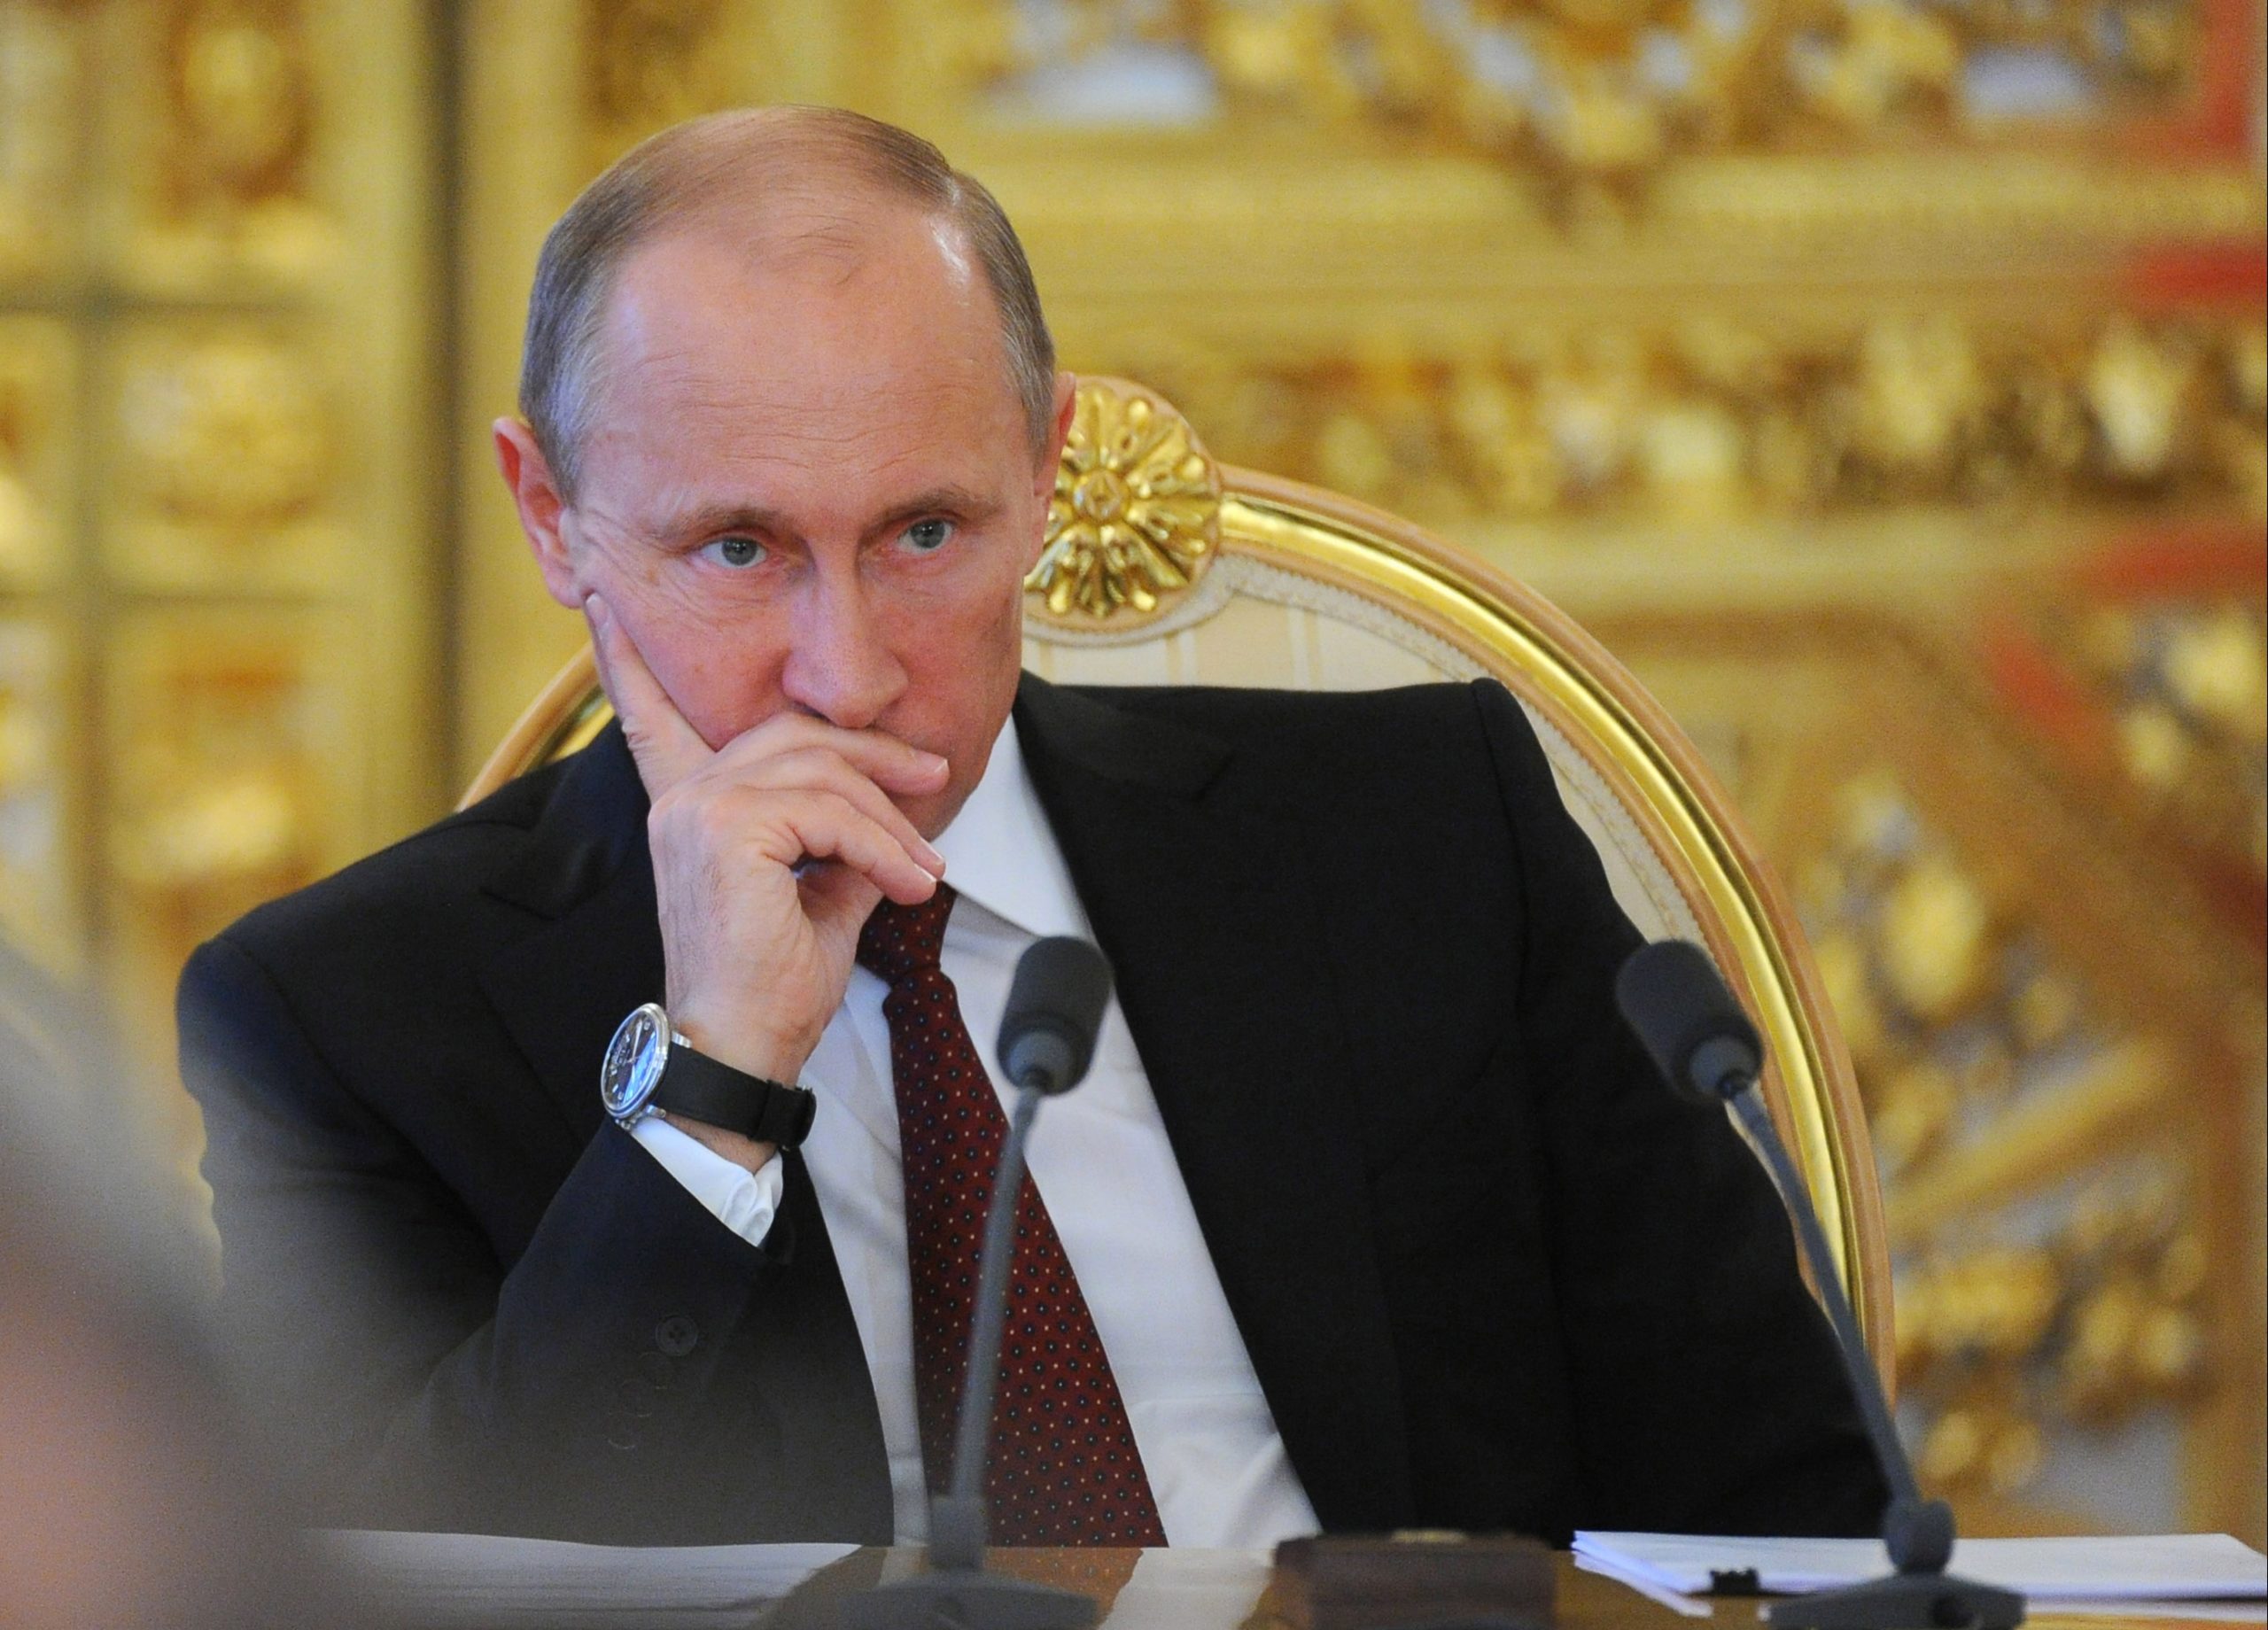 Δήλωση σοκ Πούτιν: Η Ουκρανία μπορεί να χάσει την κρατική της υπόσταση - Συνεχίζεται βάσει σχεδίου η "ειδική στρατιωτική επιχείρηση"